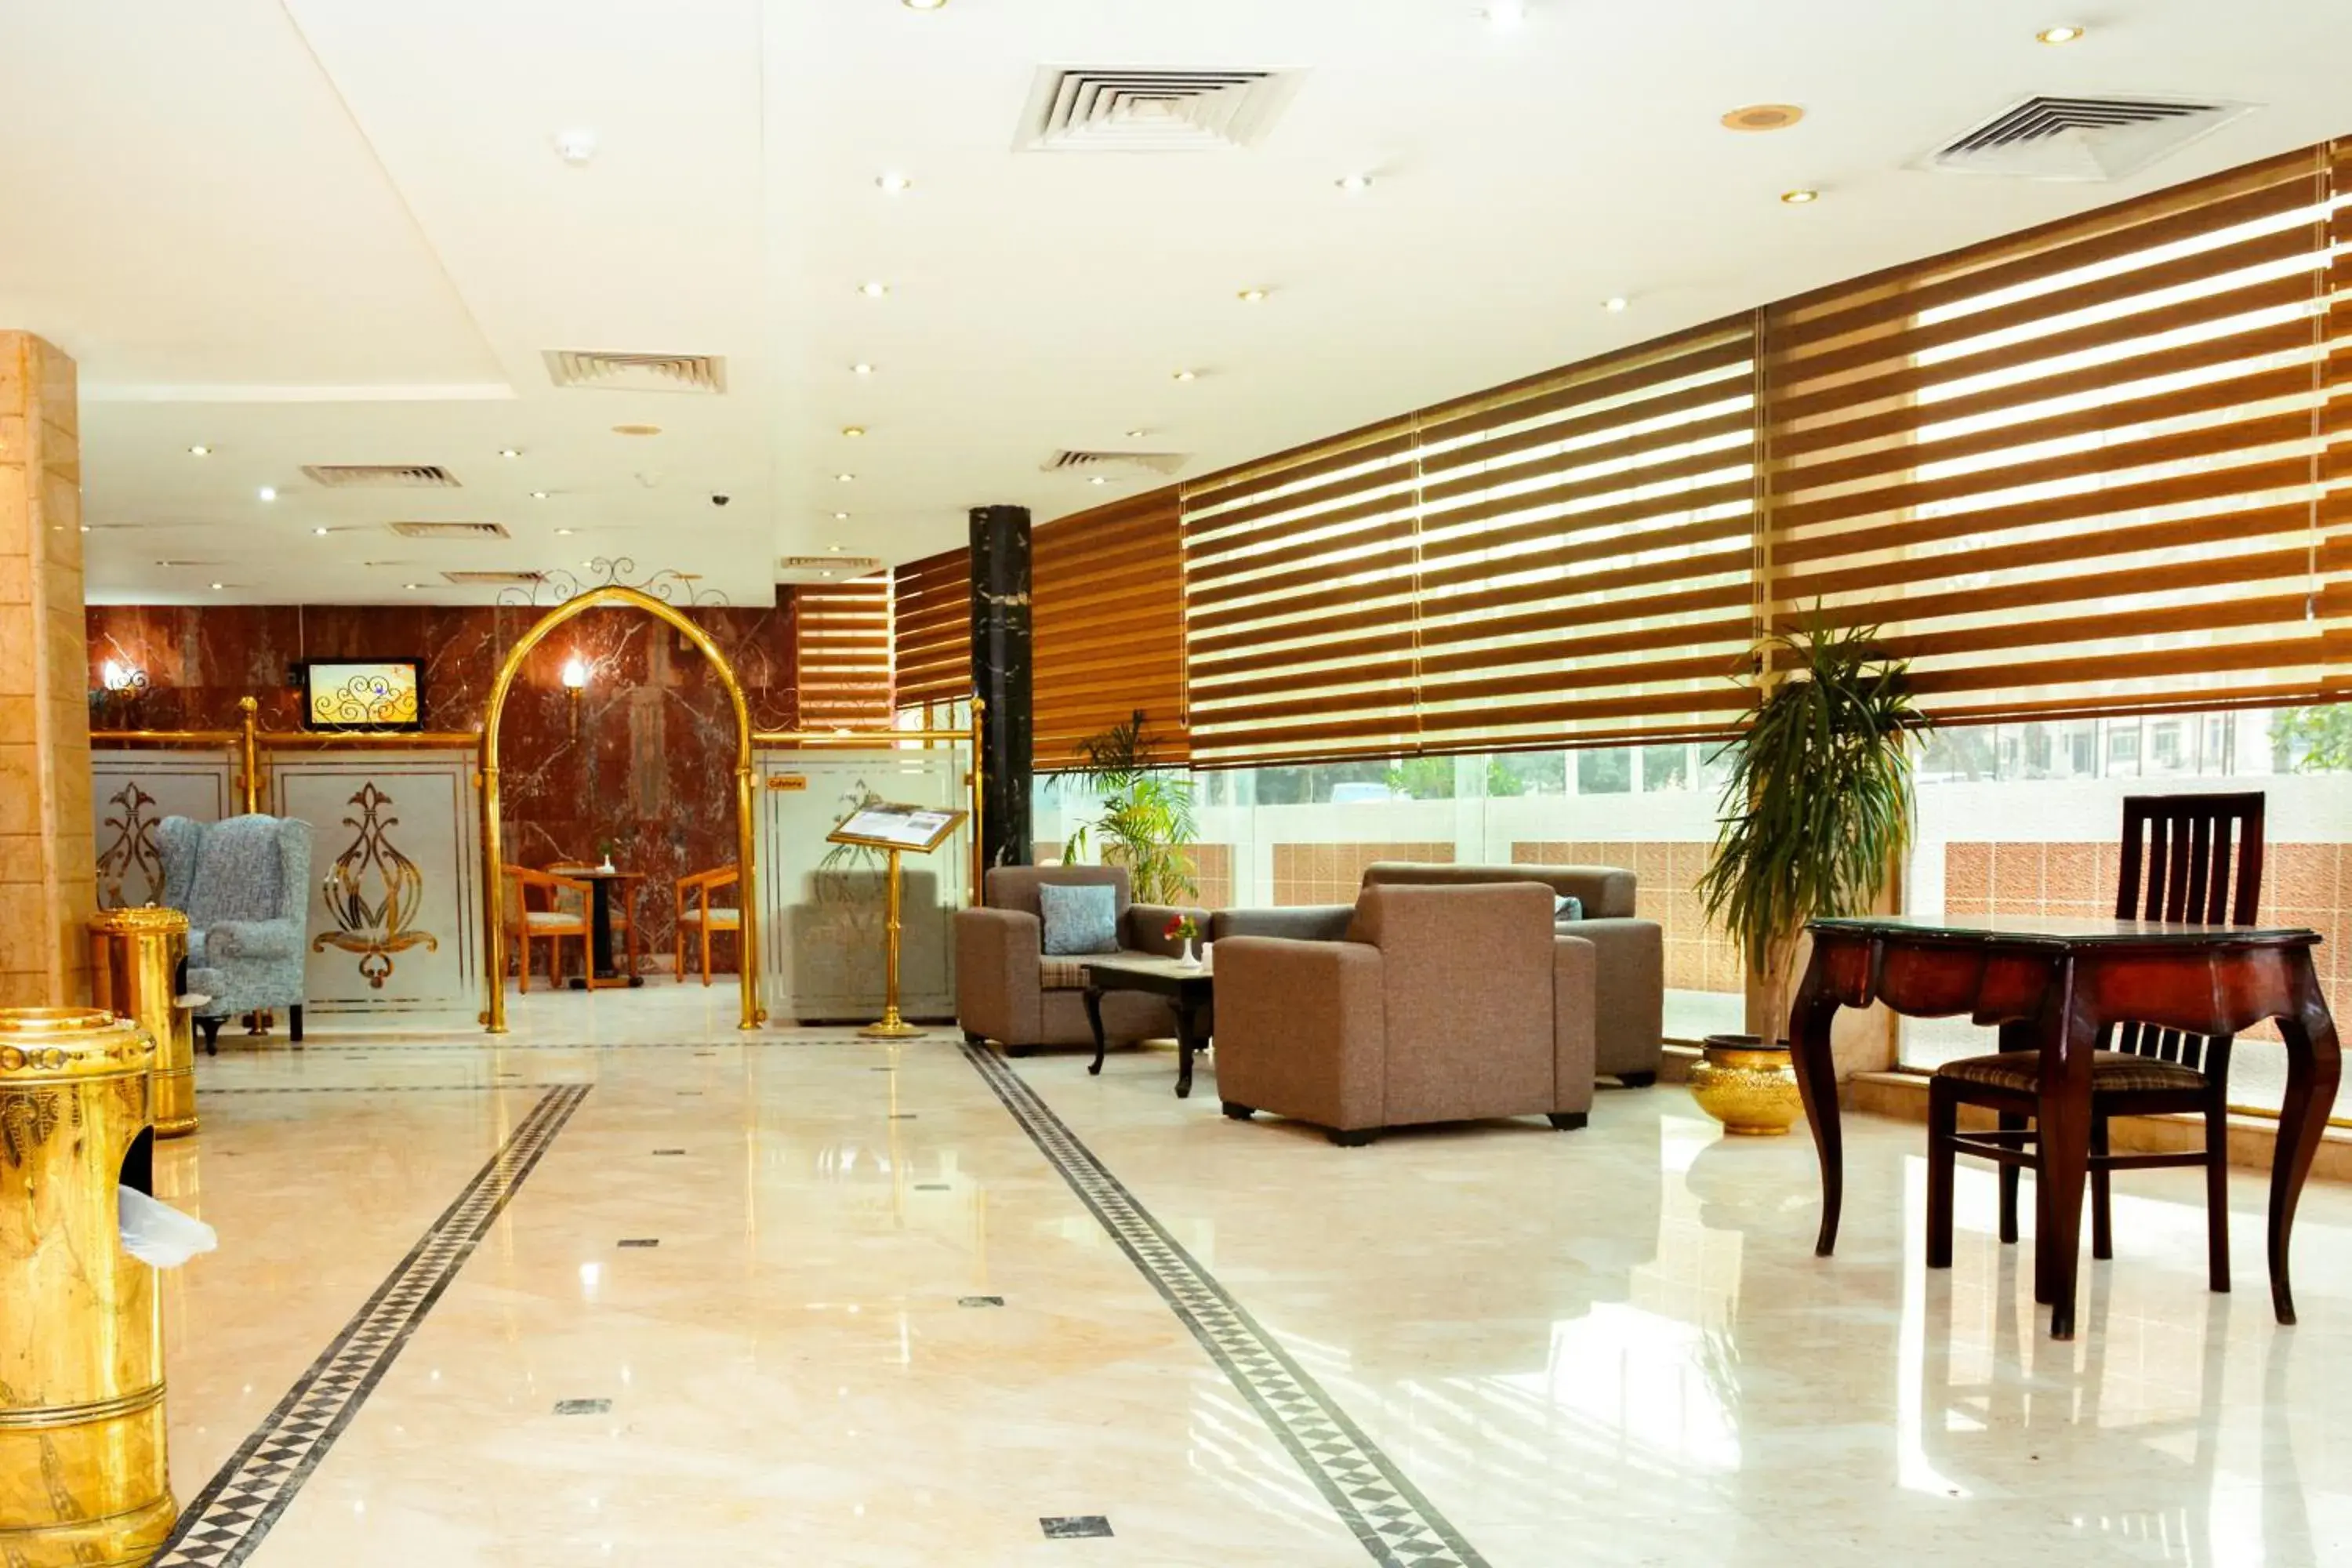 Lobby or reception, Lobby/Reception in Gawharet Al Ahram Hotel